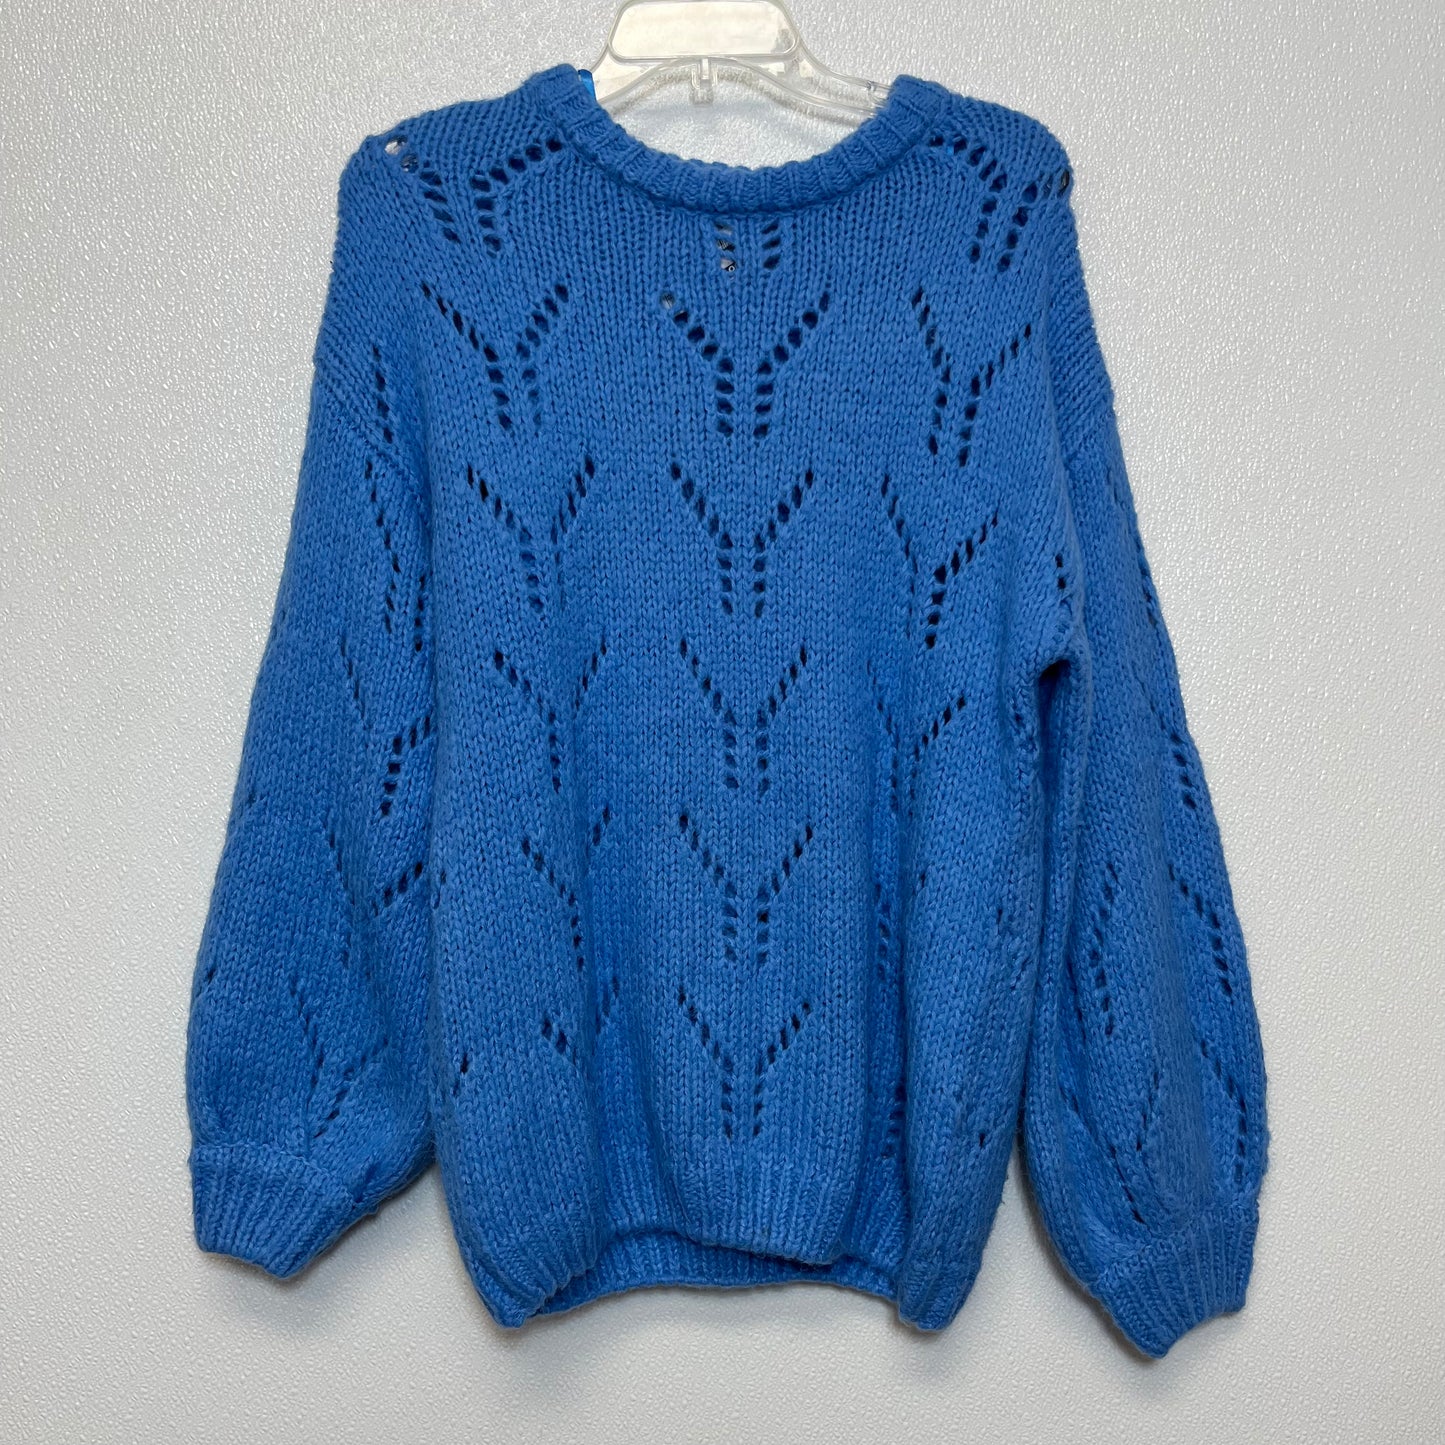 Sweater By Joa  Size: Xs